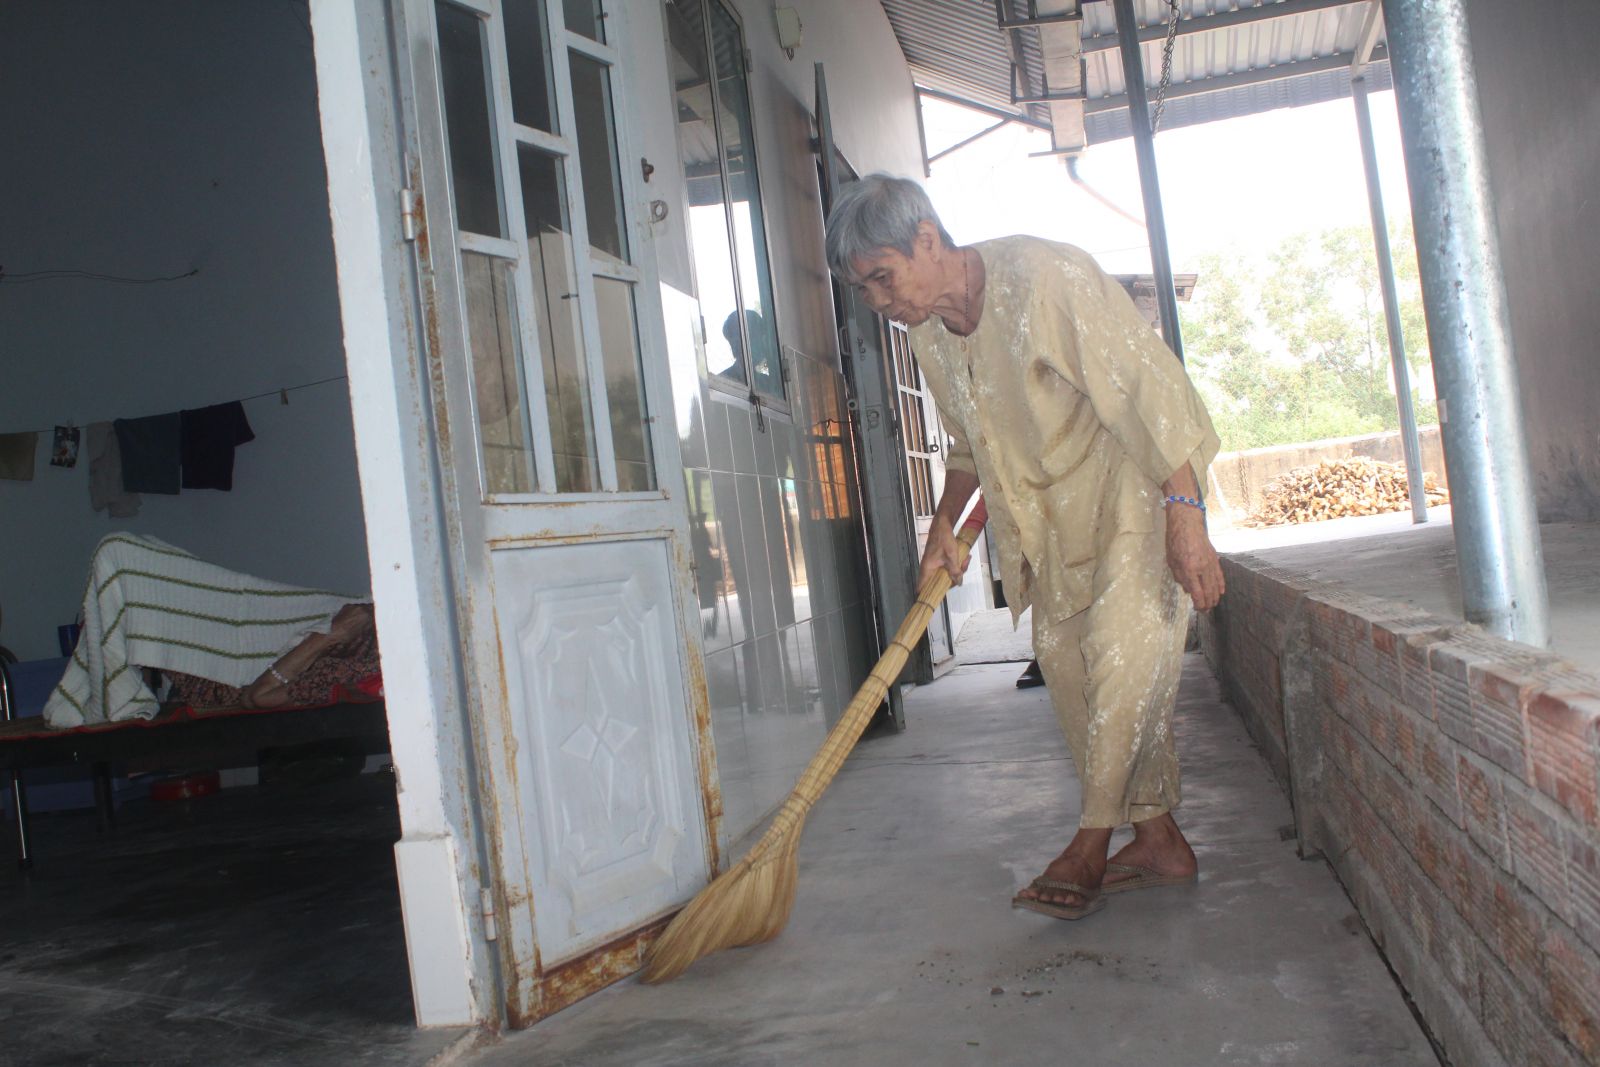 Các cụ già còn khỏe chủ động hỗ trợ mái ấm dọn dẹp vệ sinh, nấu ăn và chăm sóc các cụ già yếu hơn